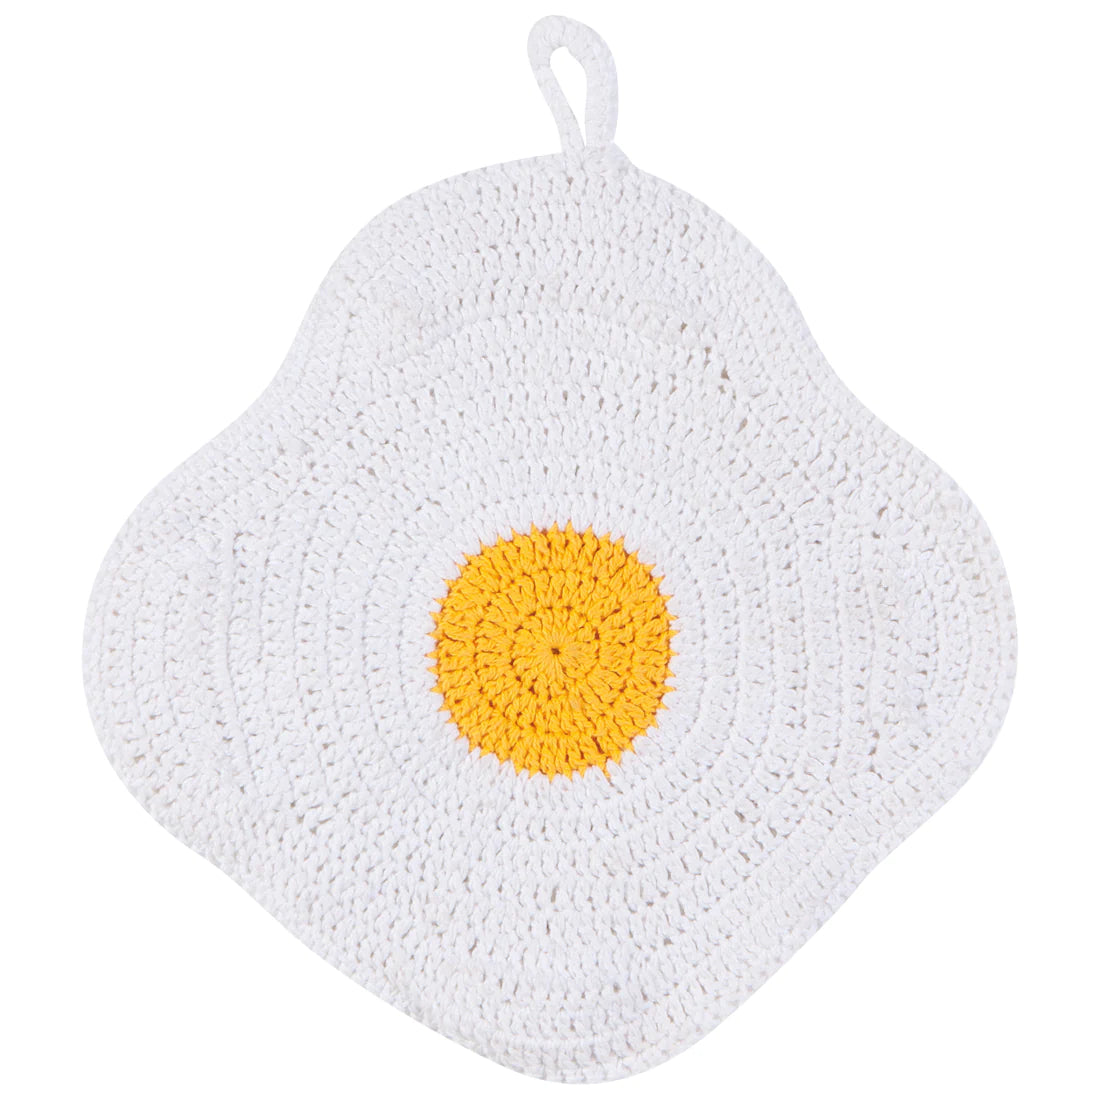 Trivet - Crocheted - Egg